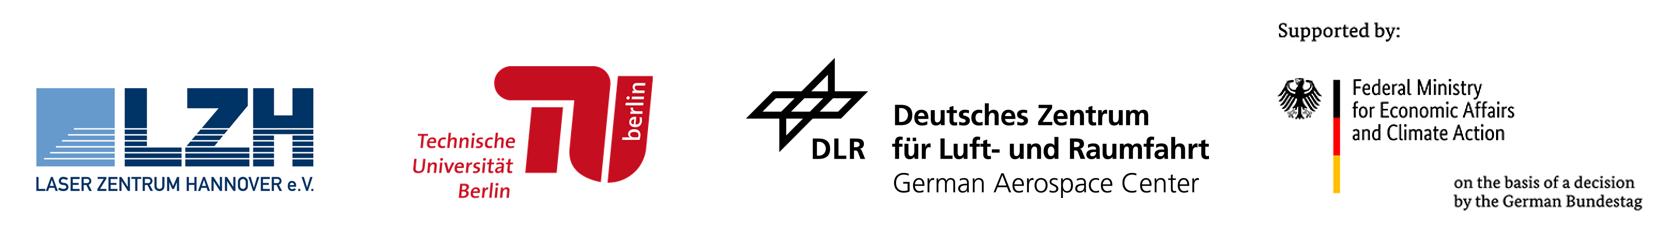 Logos LZH TU Berlin DLR BMWK englisch